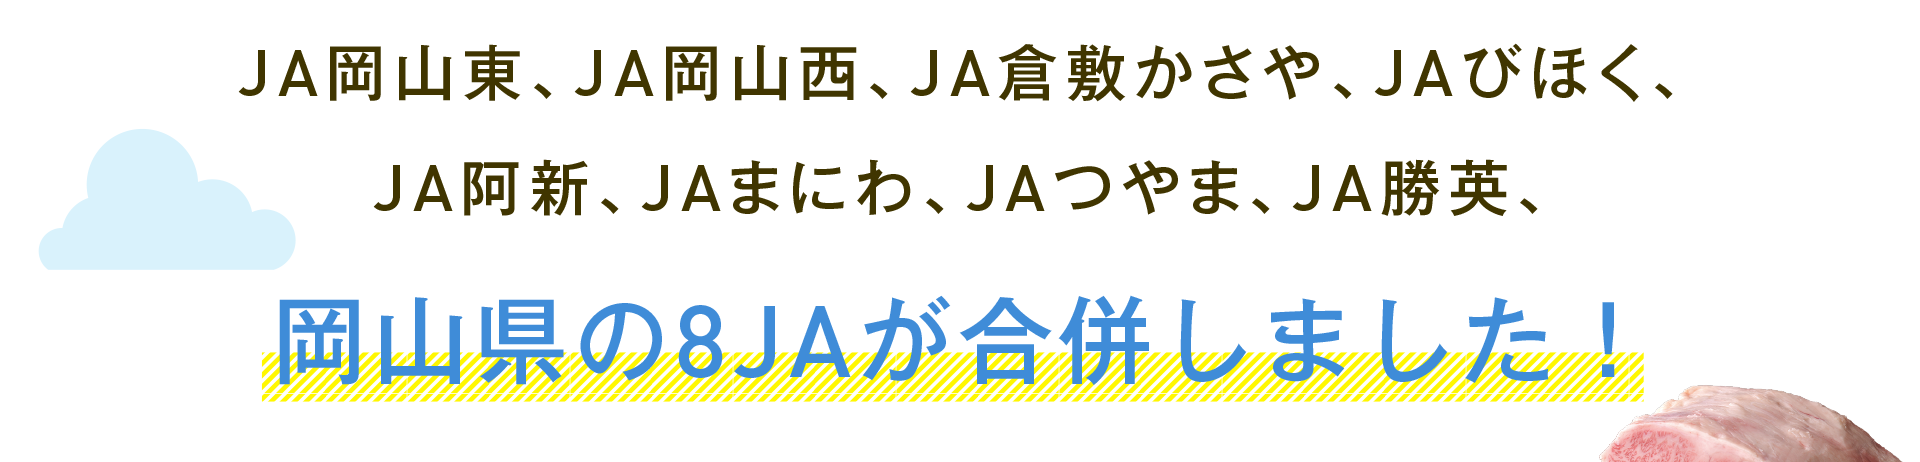 2020年4月1日 JA岡山東、JA岡山西、JA倉敷かさや、JAびほく、JA阿新、JAまにわ、JAつやま、JA勝英、岡山県の8JAが合併しました！